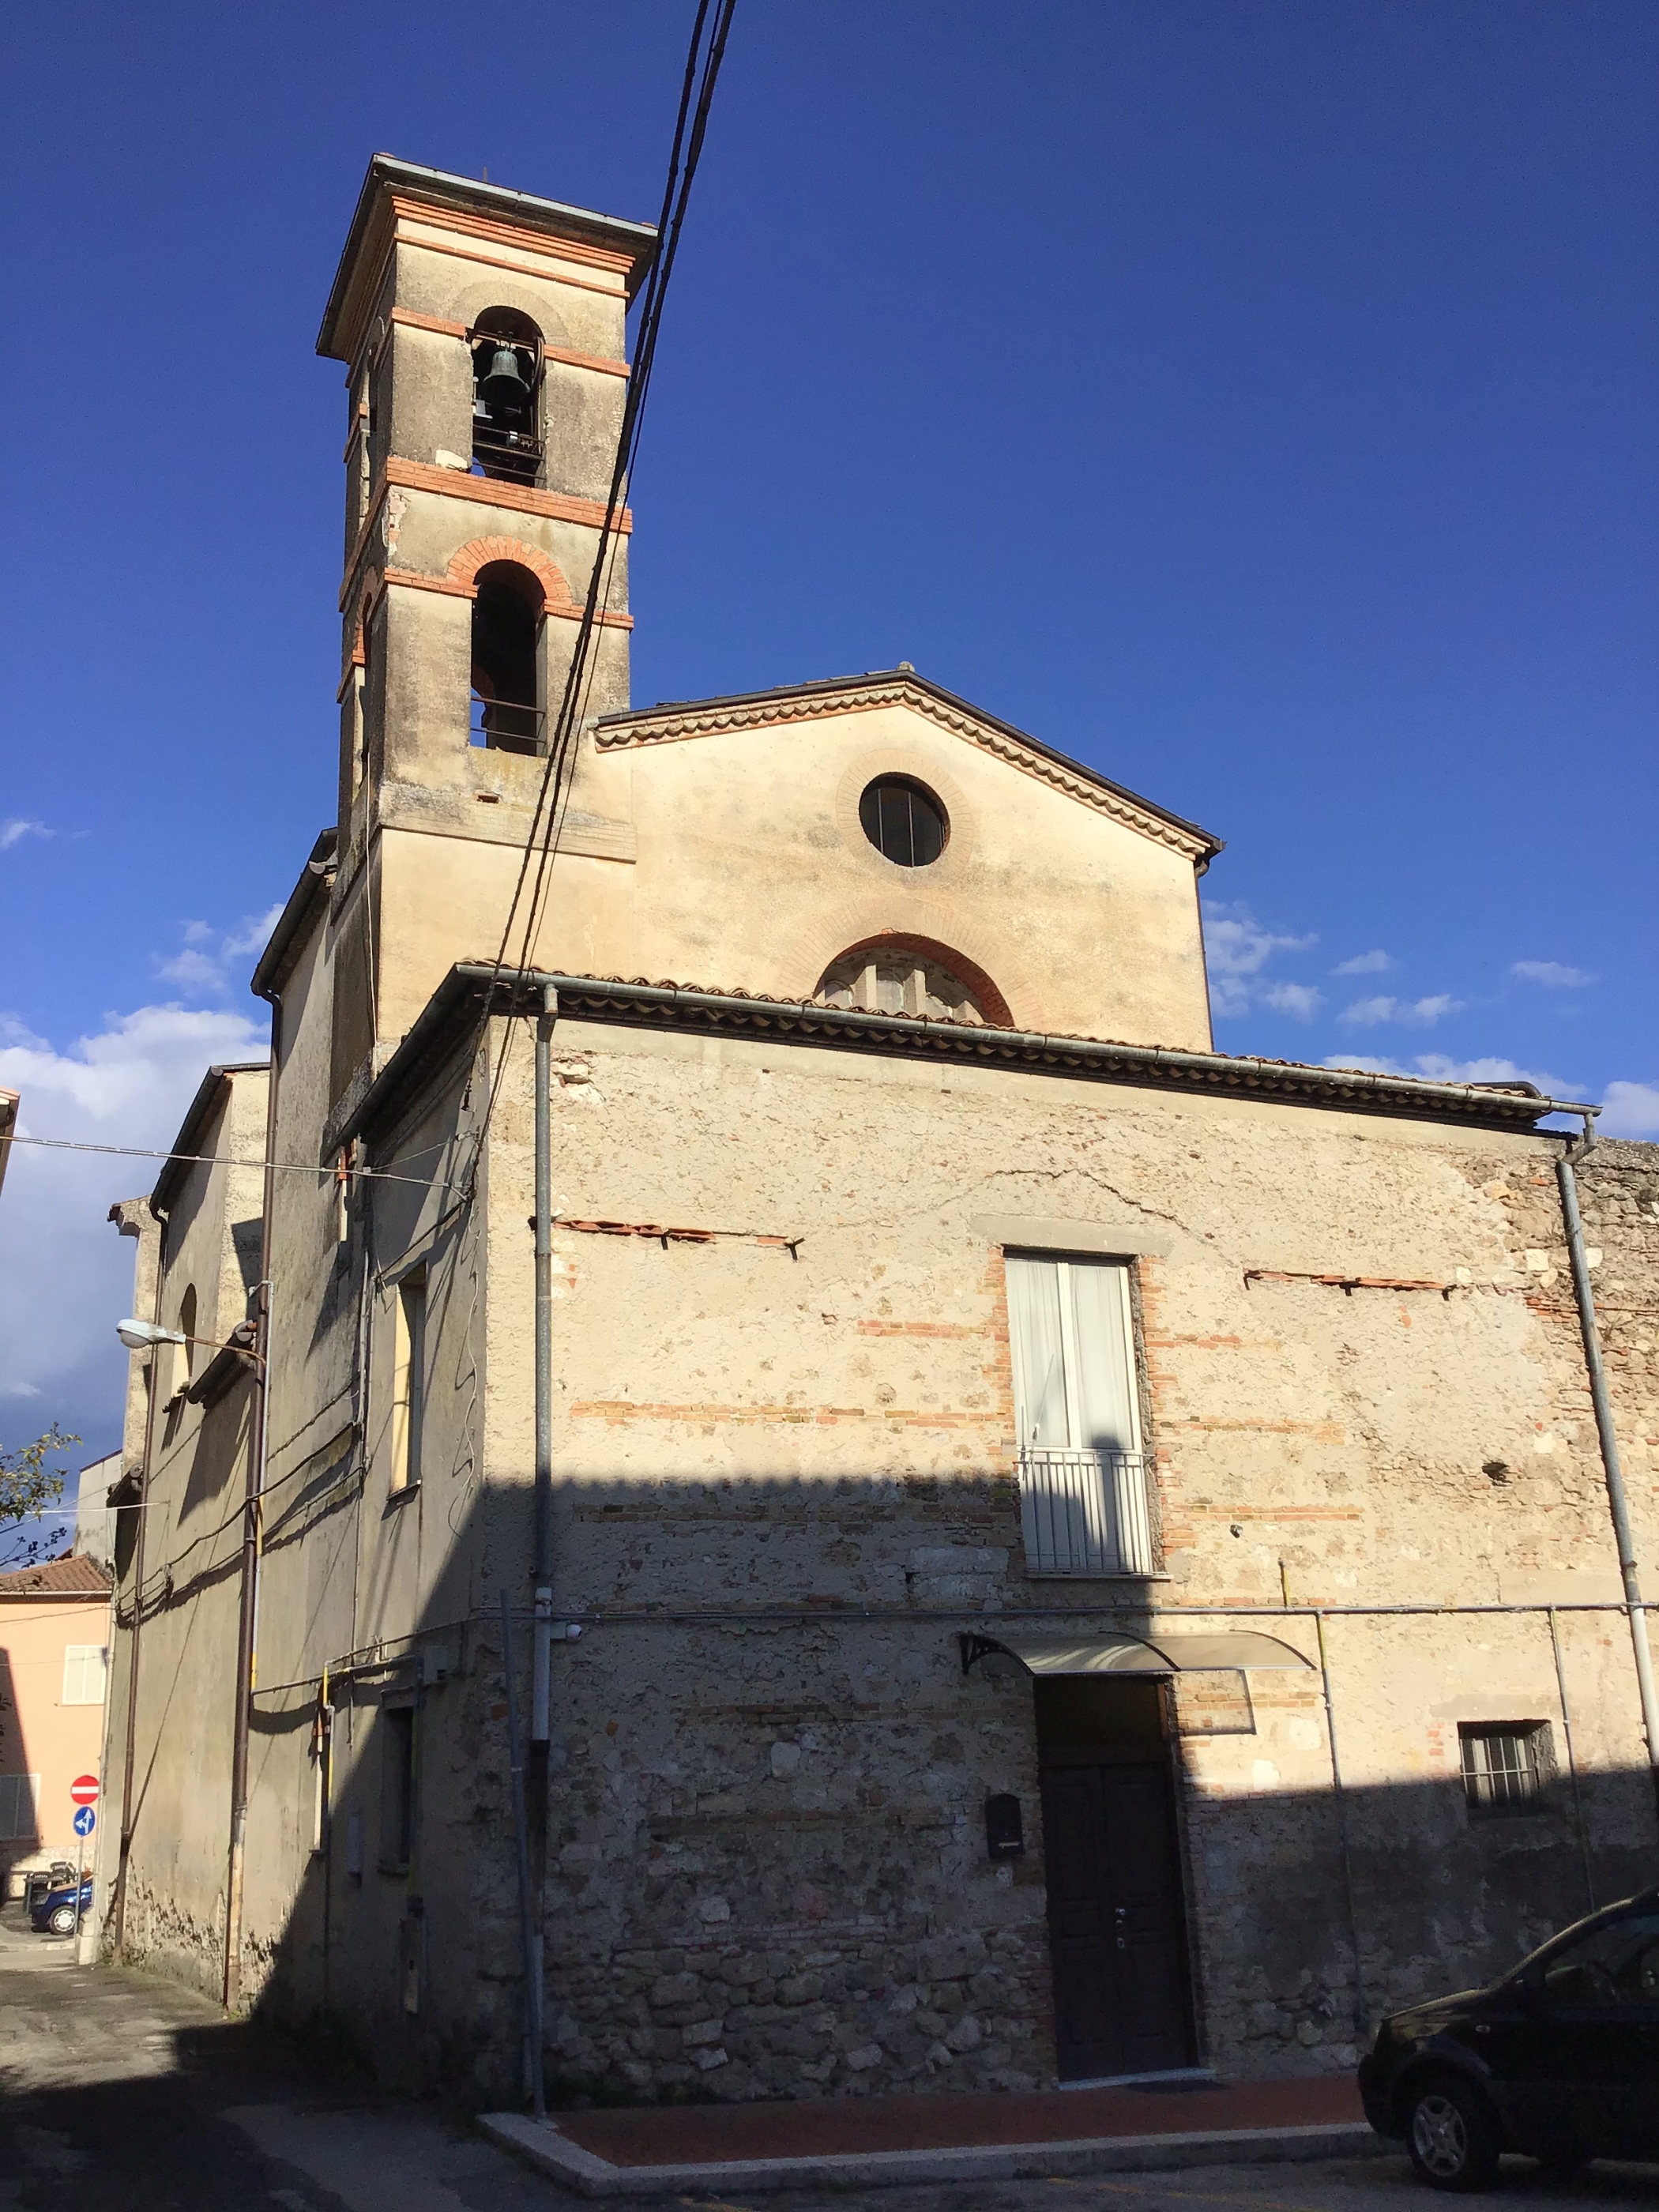 Resti del Monastero di S. Maria ad Ripa (monastero) - Pontecorvo (FR) 